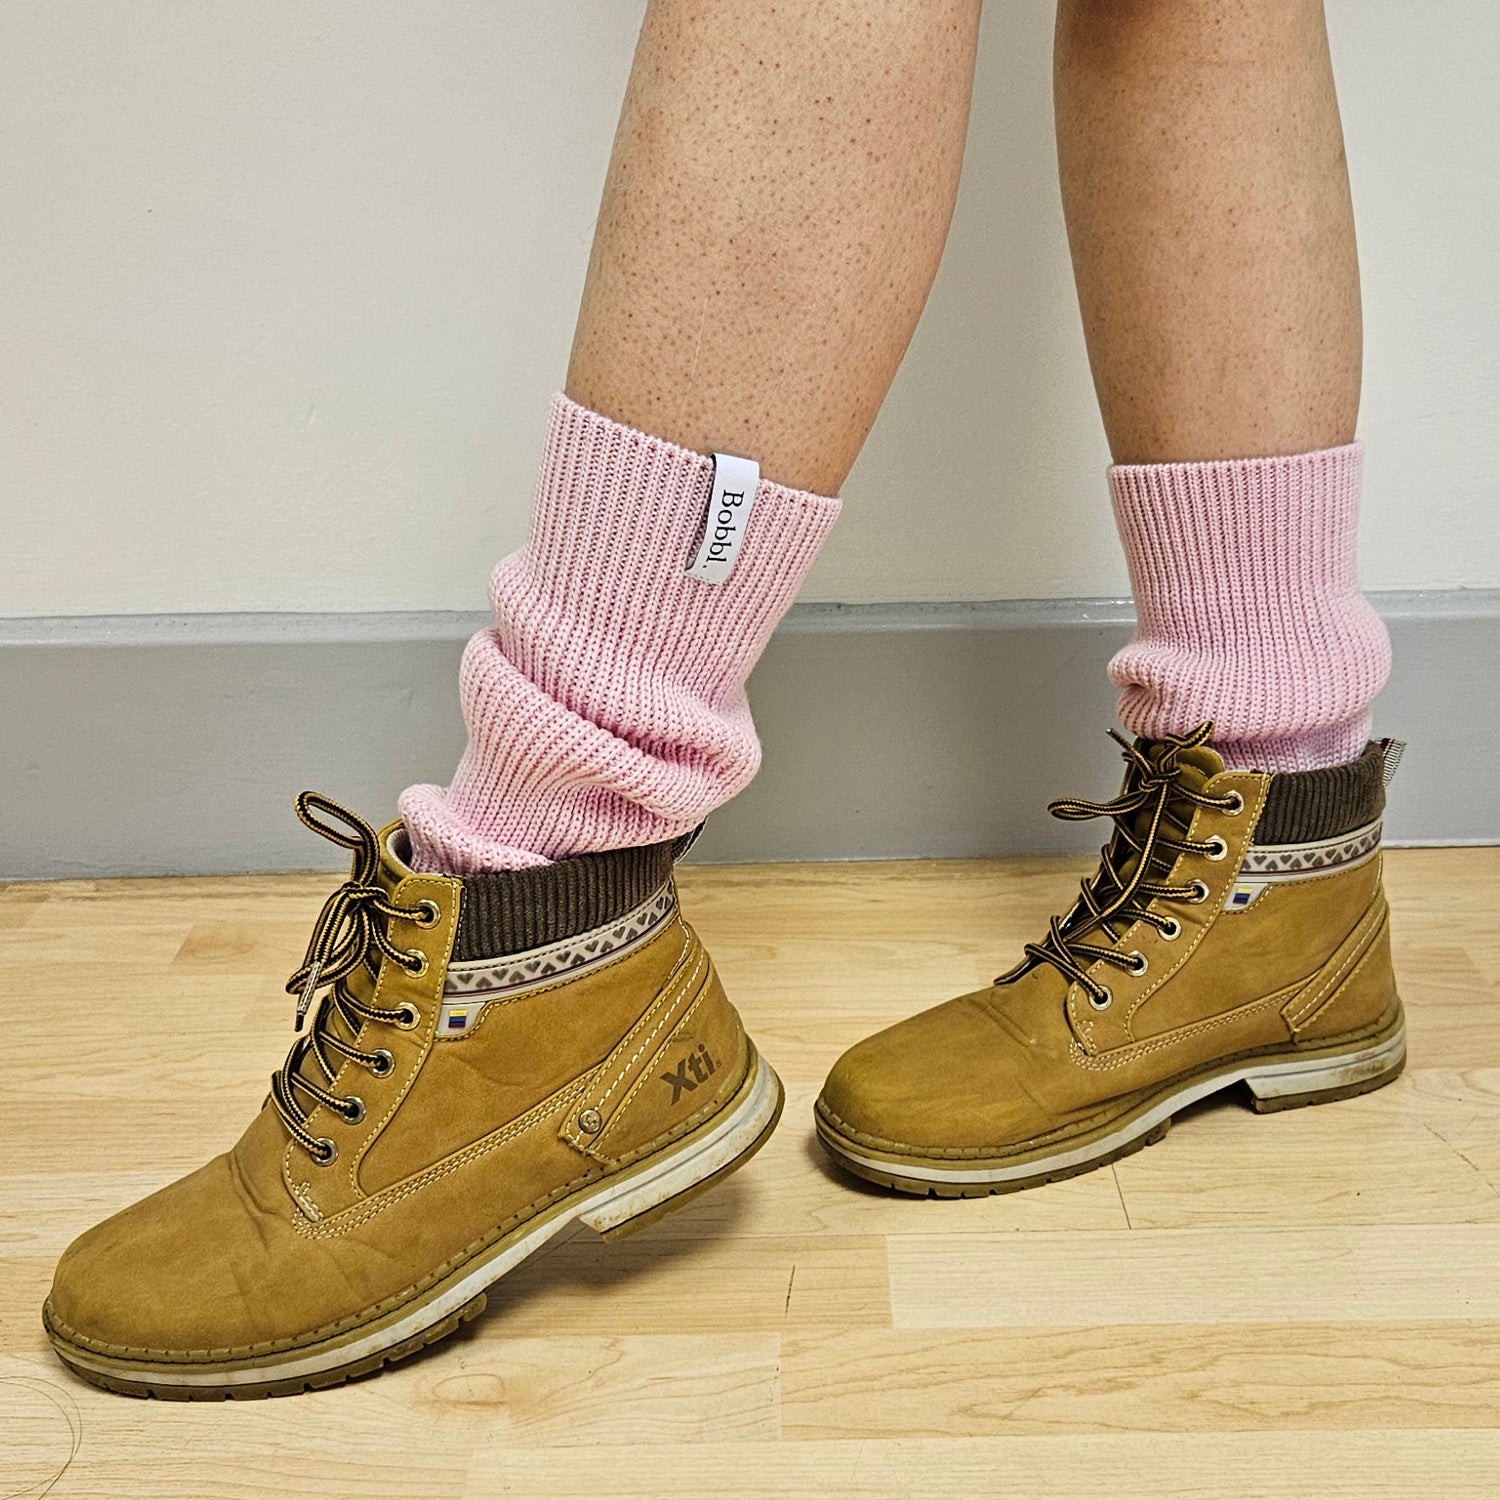 Classic Knit Leg Warmers - Pink